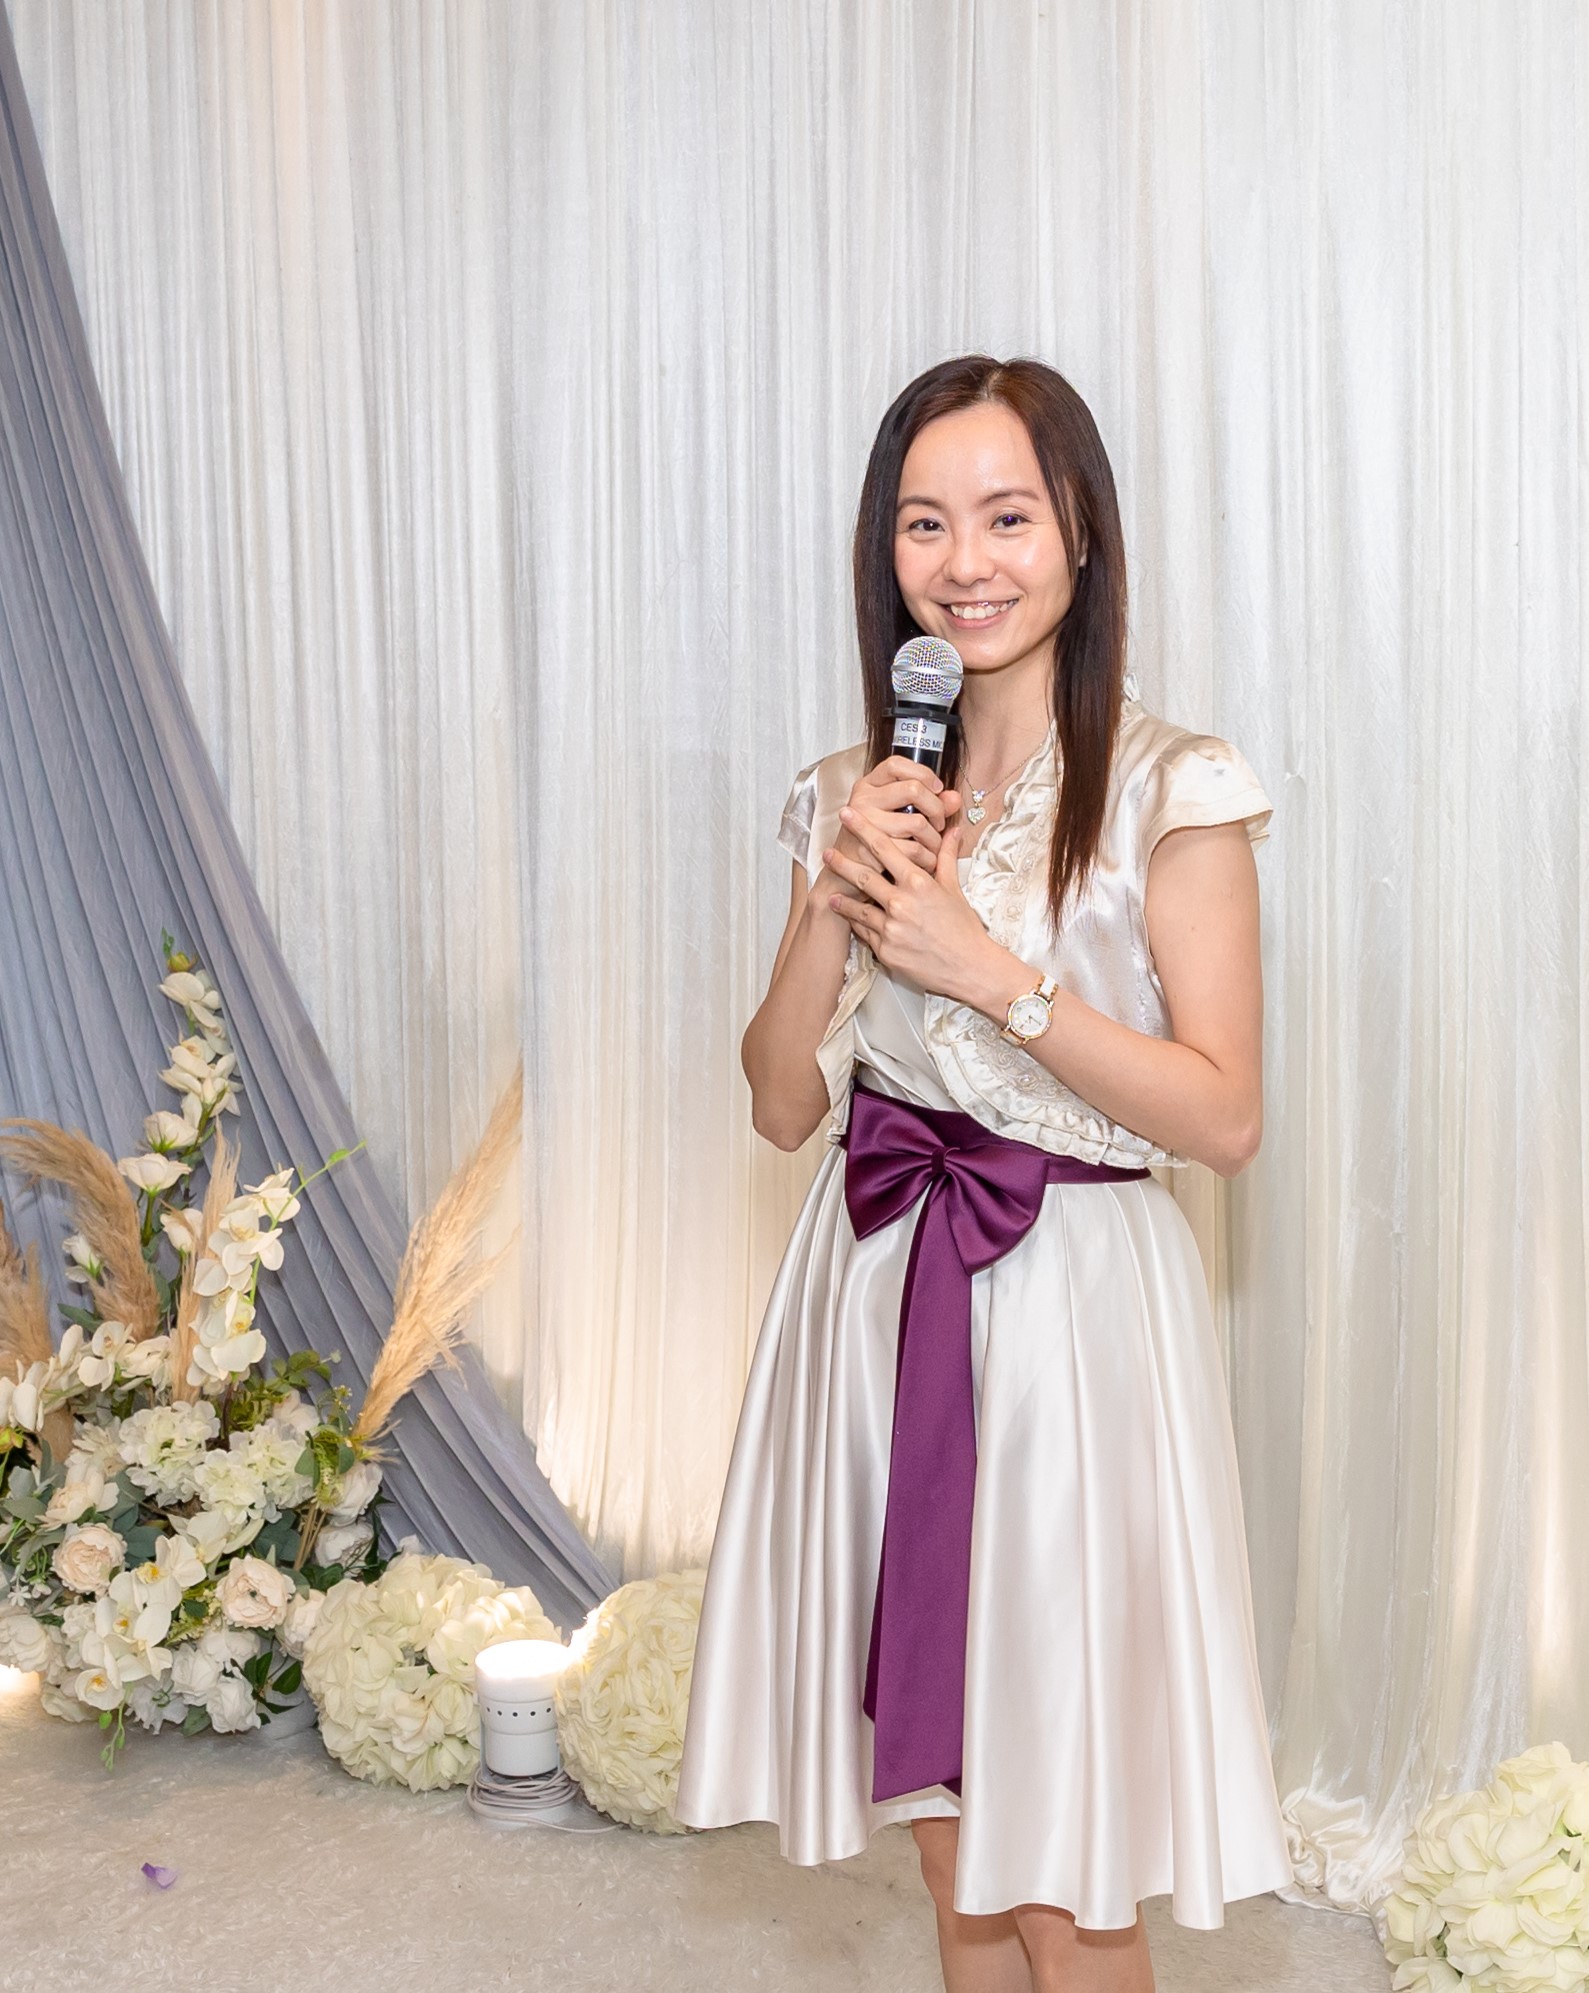 高評分優質專業婚禮統籌師: Bless Wedding 首席婚禮統籌及司儀 Angel Leung